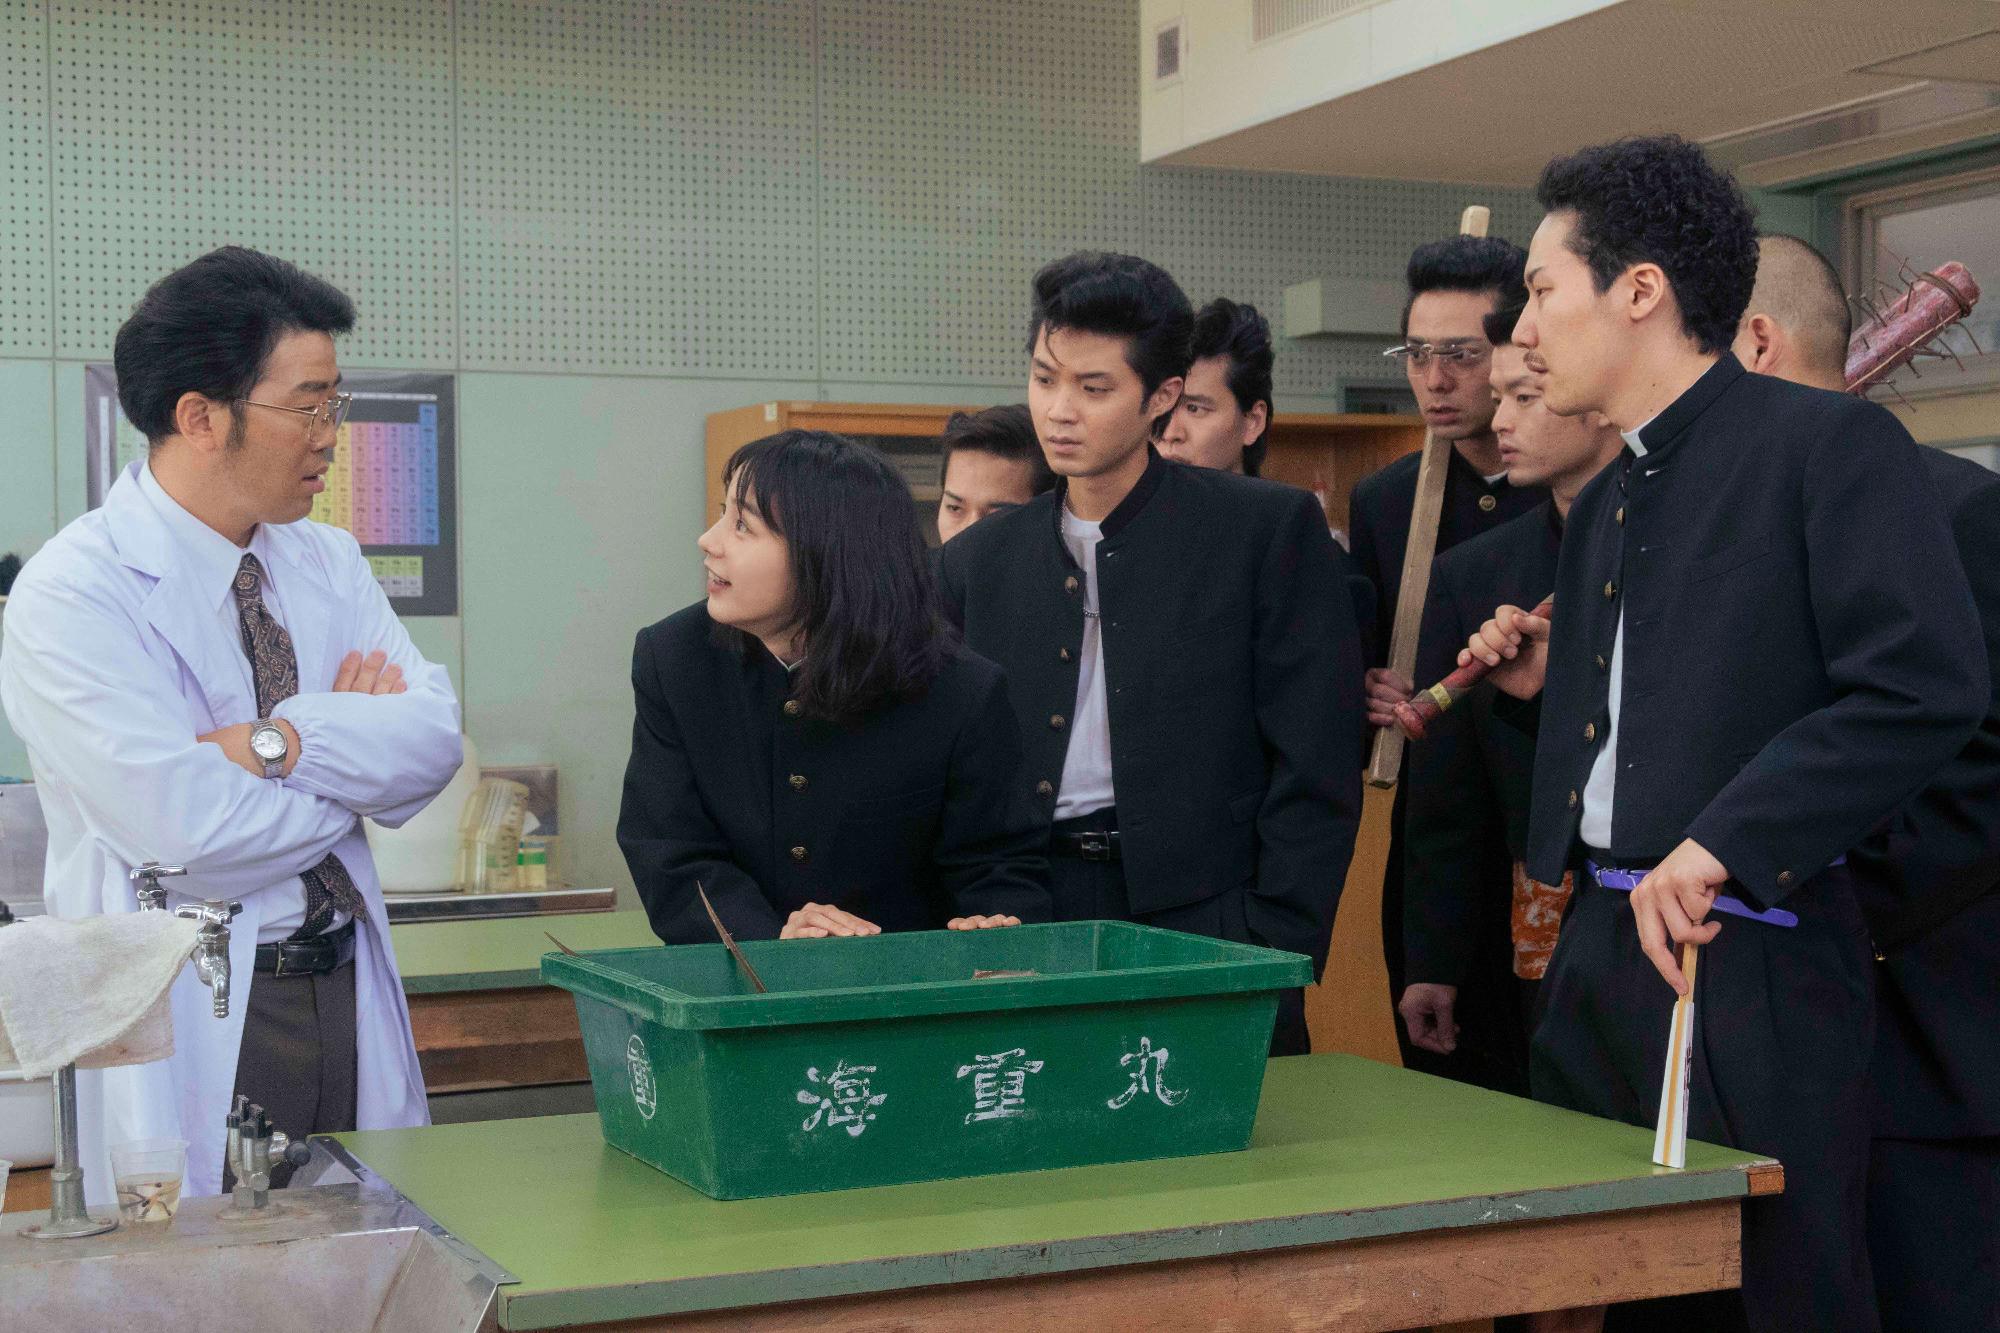 机に置かれた海重丸と書かれた緑の箱の横に白衣の腕組した男性、一人の男子学生が箱に手を置き、その後ろには学ラン姿でいろいろな道具を持った7名が立っている写真